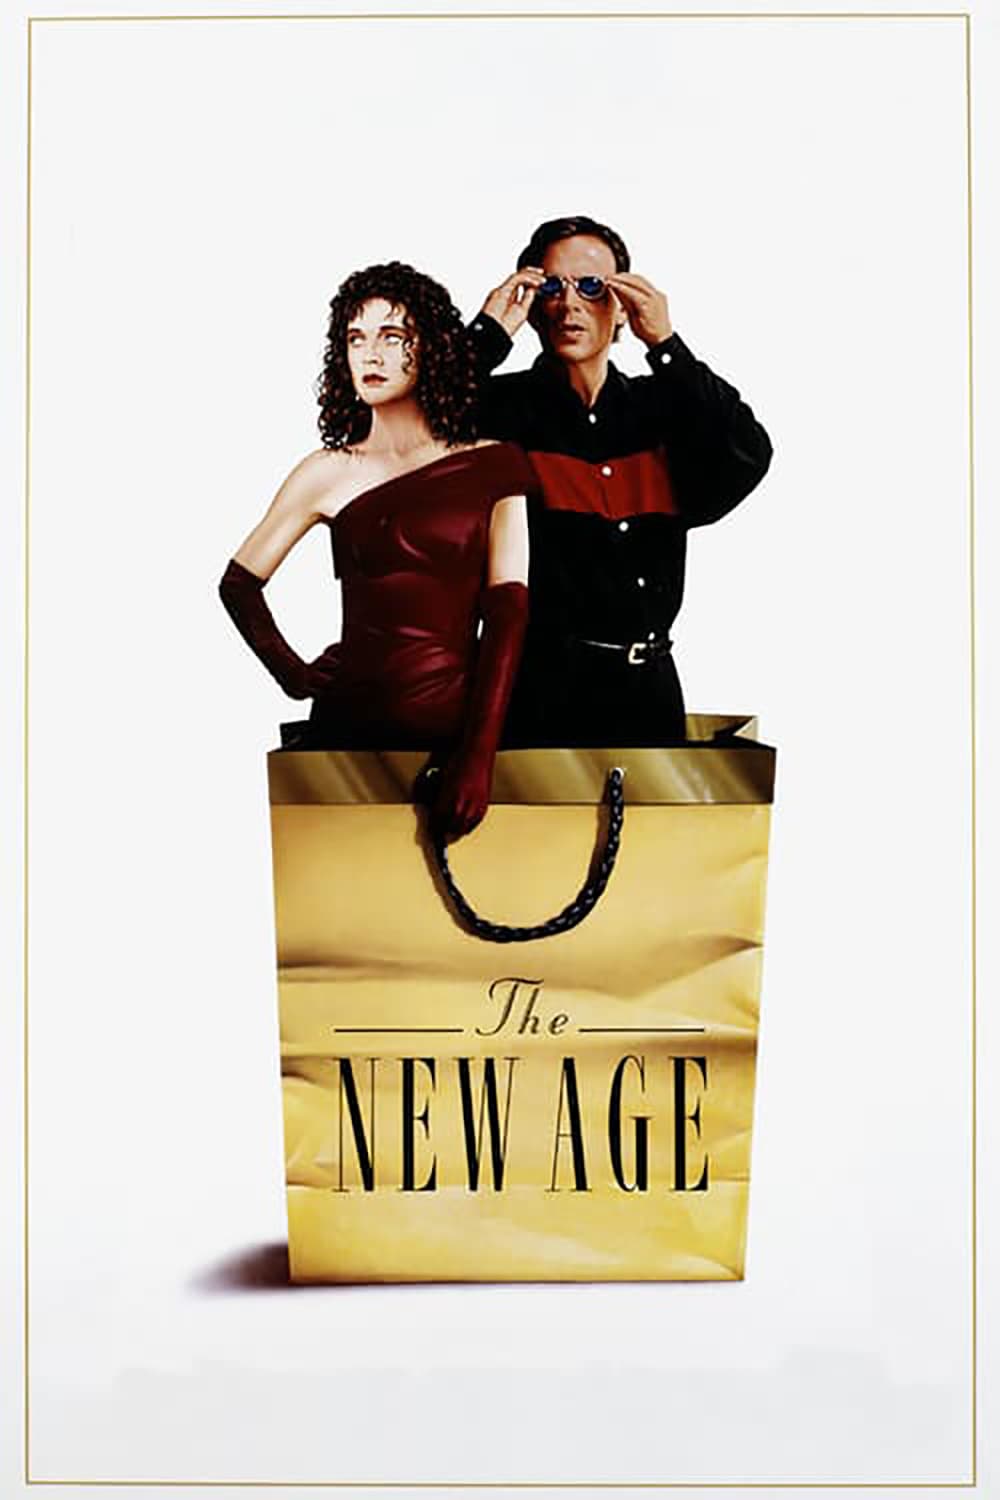 Plakat von "The New Age"